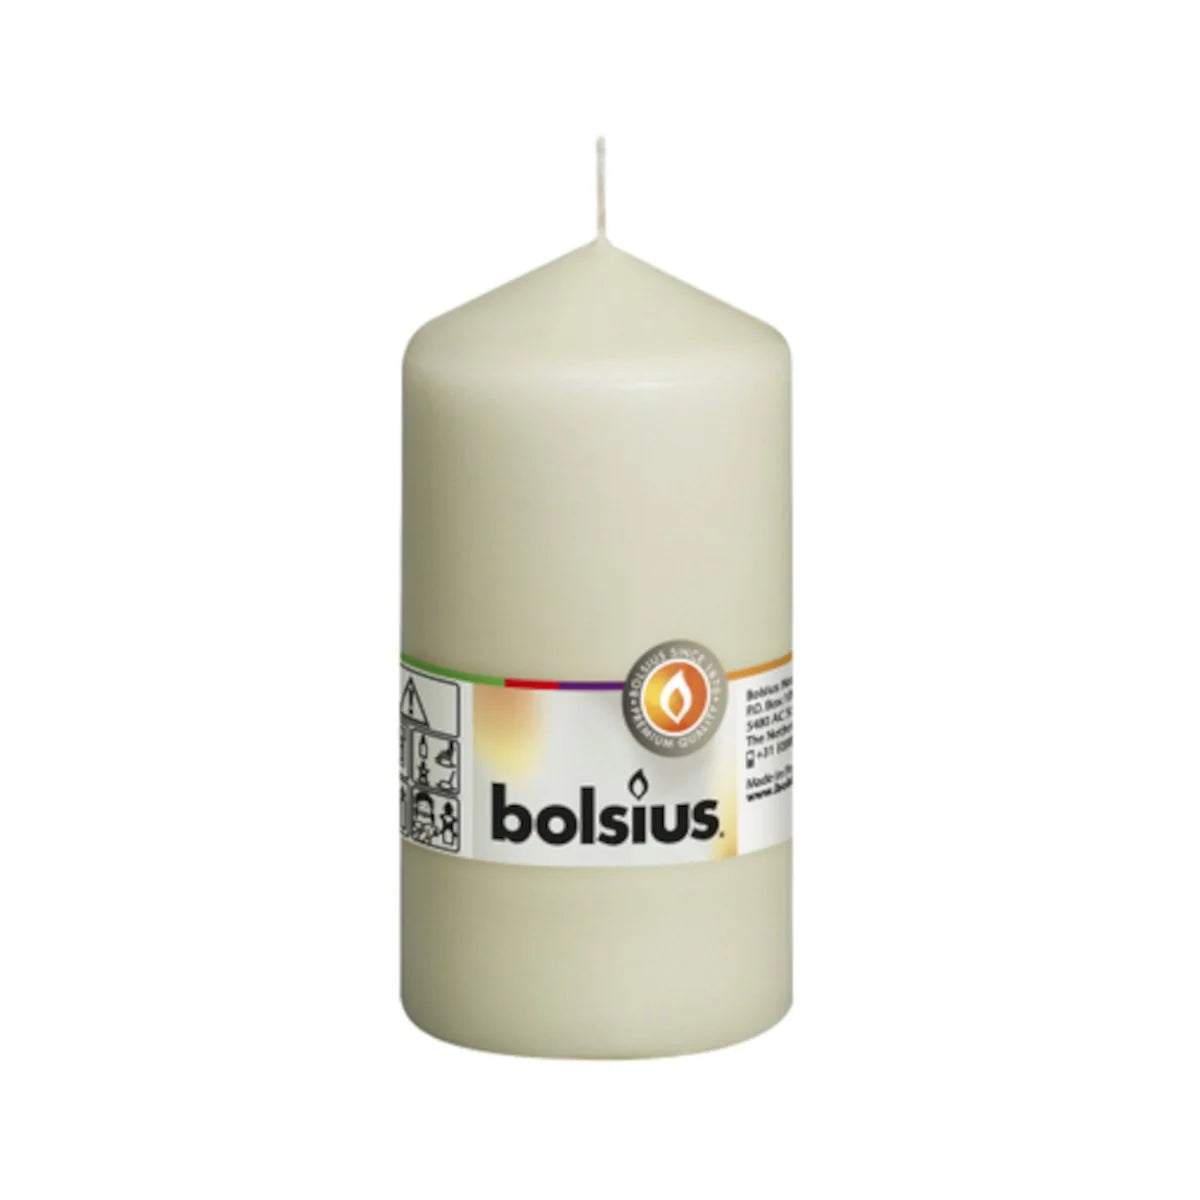 Bolsius Pillar Classic Candle 43hr